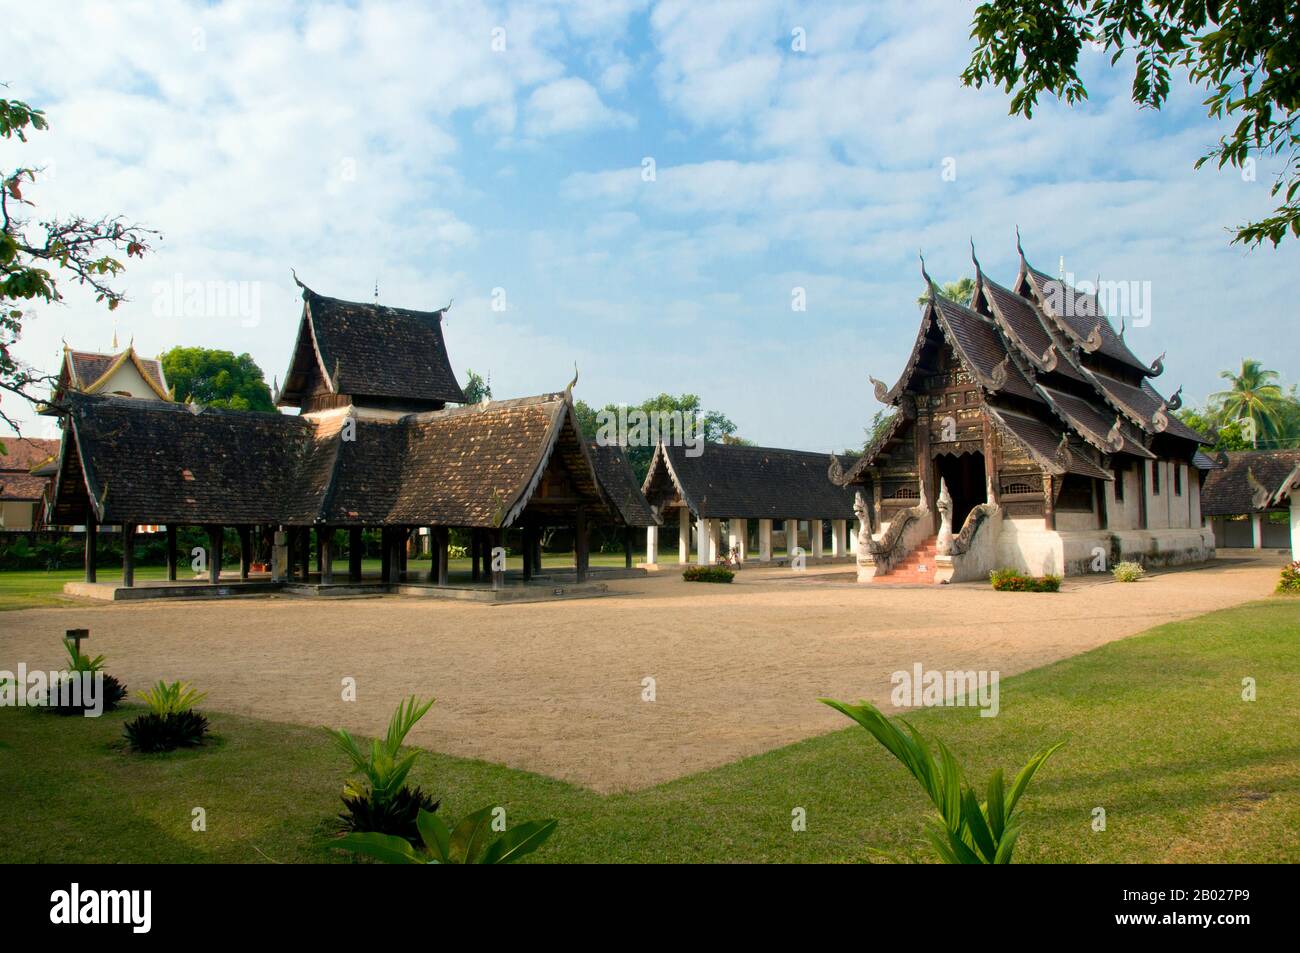 Wat Ton Kwen (วัด ต้น เกว๋น), eher bekannt als Wat Inthrawat (วัด อินทราวาส), bedeutet "Tempel der Zuckerpalmen" in kham muang oder Nordthailand und sicher genug, dass der rustikale Tempel, der in einem kleinen Dorf inmitten von grünen Reisfeldern liegt, von hohen und eleganten Zuckerpalmen umgeben ist. Wat Ton Kwen, erbaut zu Beginn der Herrschaft von Chao Kawilorot (1856-70) im Jahr 1856, gehört zu den besten und reinsten Beispielen, die die traditionelle Holzarchitektur Des LAN Na im 19. Jahrhundert überdauern. Zweifellos ist sie wegen ihrer geringen Größe und ihrer relativen Isolation von den "Verbesserungen" und anderen Entrüsten verschont geblieben Stockfoto